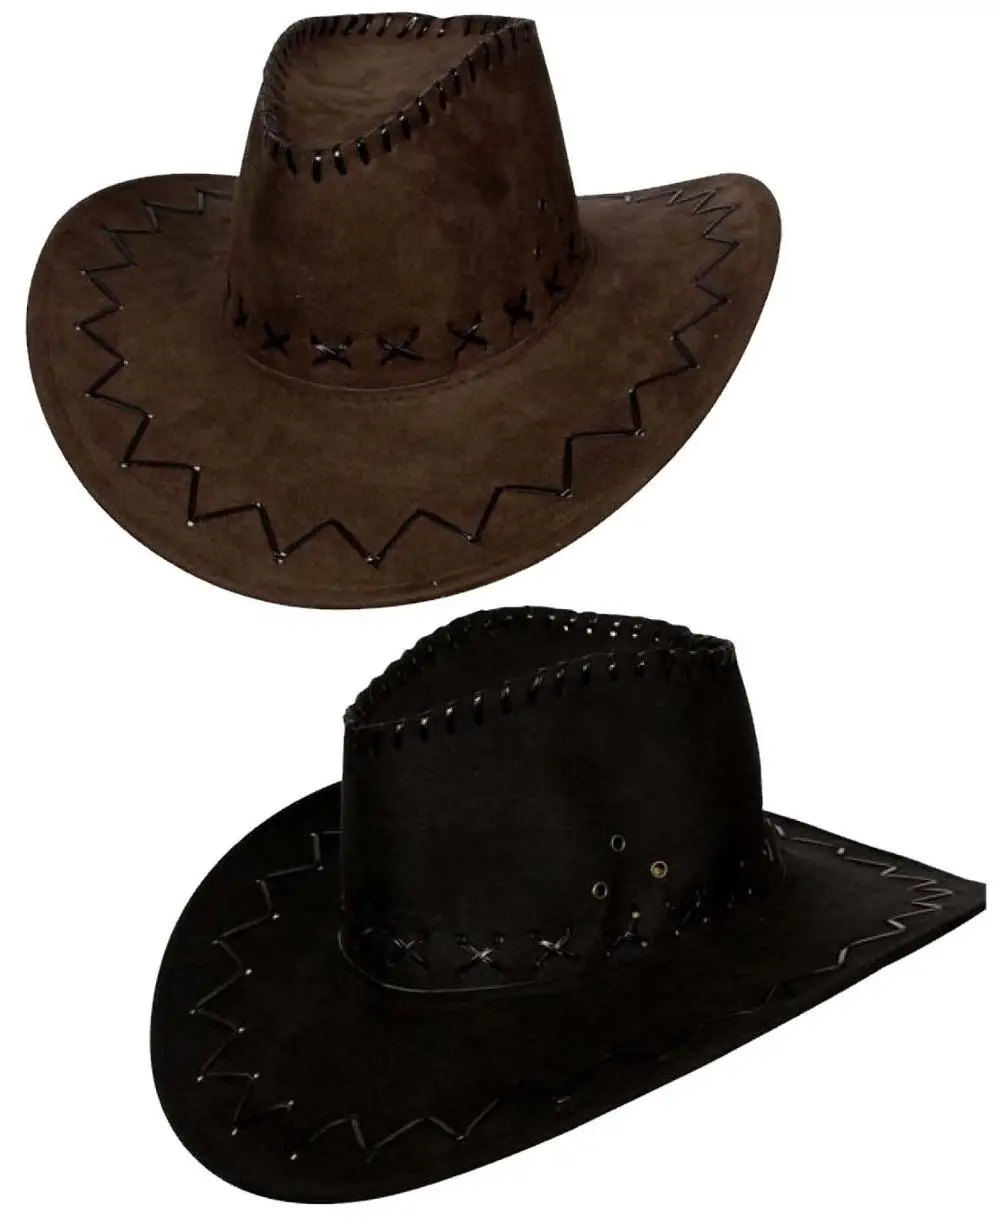 Дикая шляпа. Стетсон шляпа Дикова Запад. Австралийская ковбойская шляпа. Шляпа австралийских ковбоев. Ковбойская шляпа с загнутыми полями.